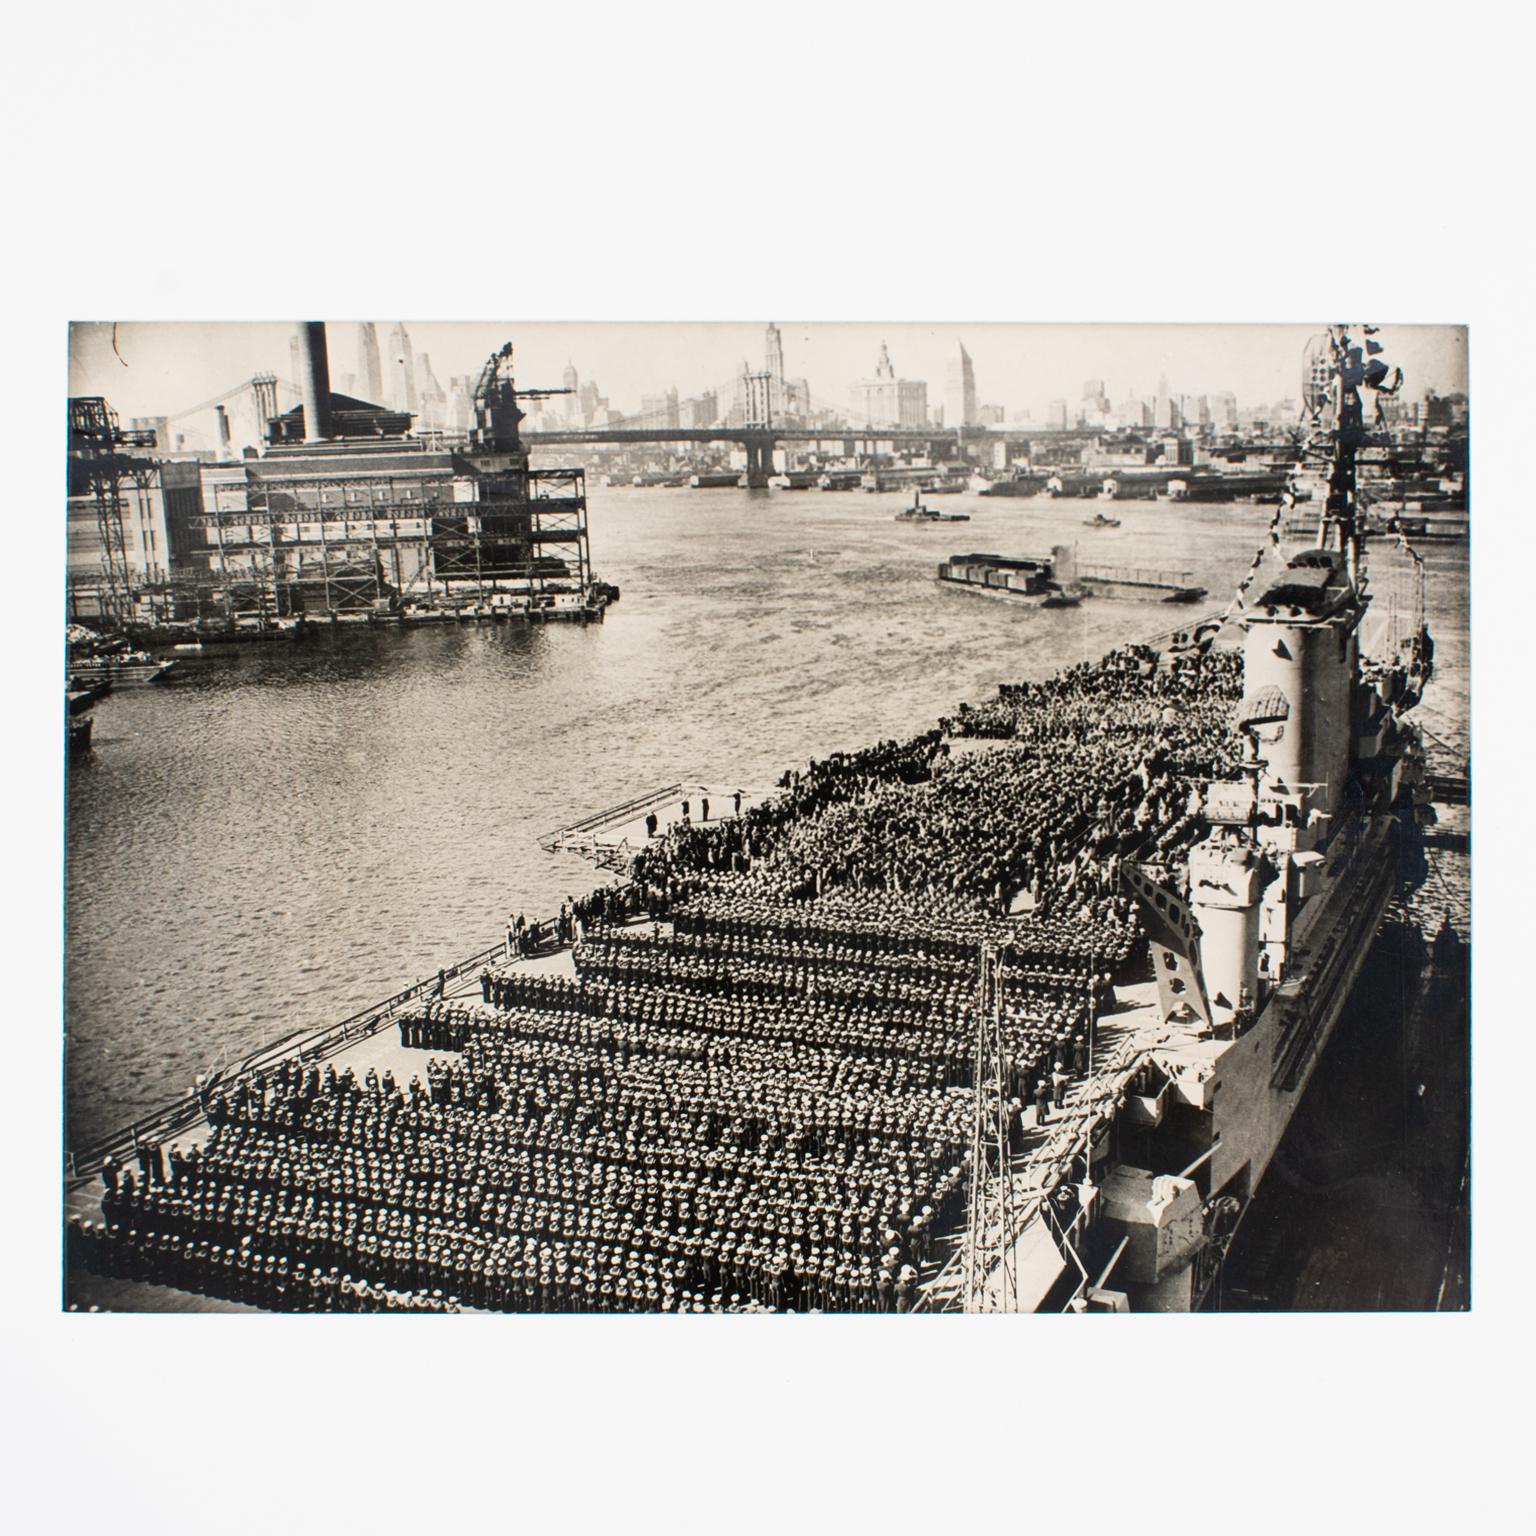 Eine Original-Silbergelatine-Schwarzweißfotografie von Associated Press Photo. Der Flugzeugträger USS Roosevelt auf dem Hudson River, New York, während des Navy Day im Jahr 1945.
Merkmale:
Original Silber Gelatine Druck Fotografie